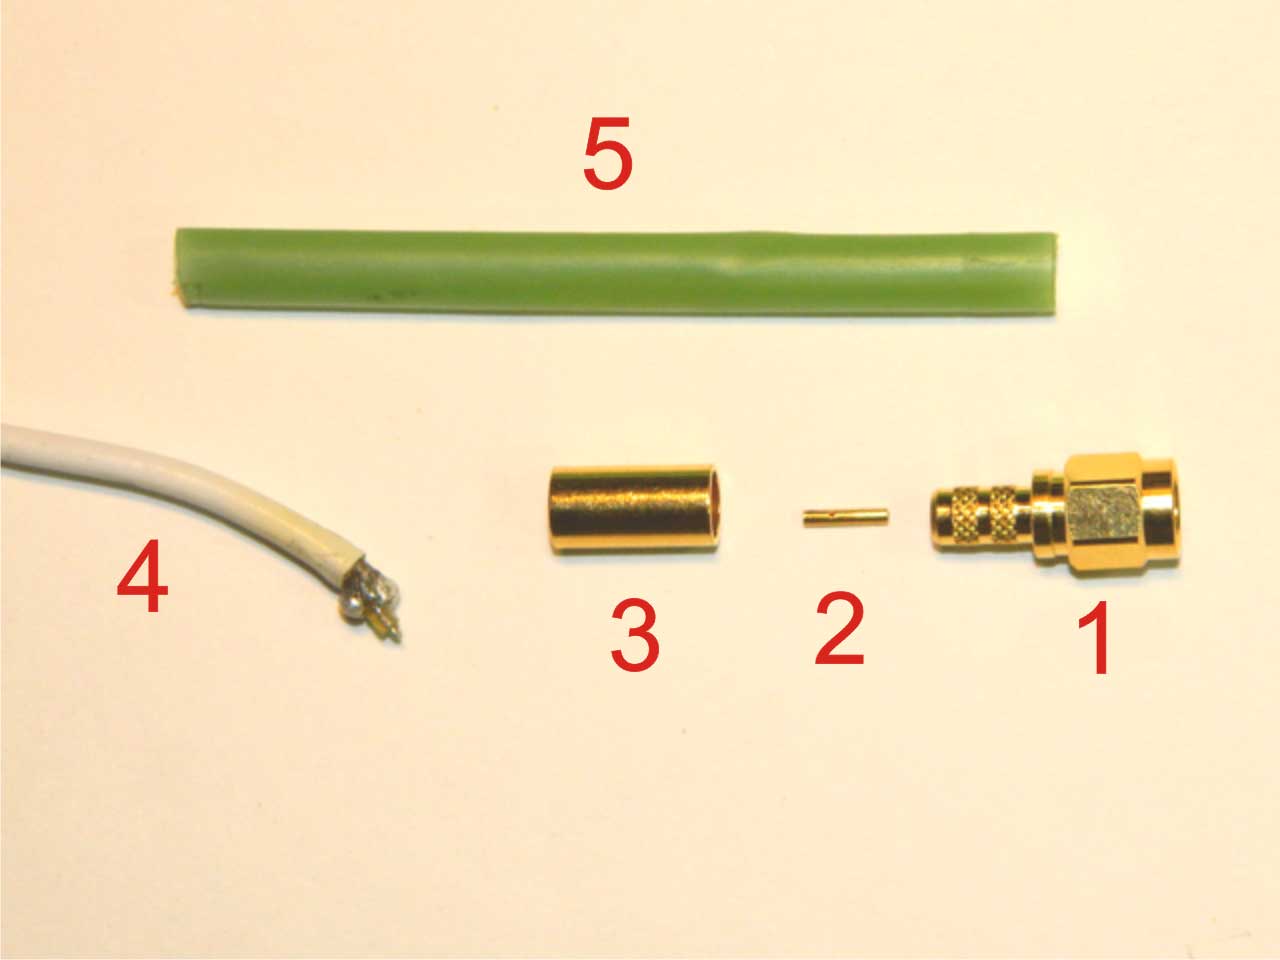 Разъём на кабель (1 - разъём, 2 - центральный контакт, 3 - экранирующая муфта, 4 - антенный кабель, 5 - термоусадочная трубка)